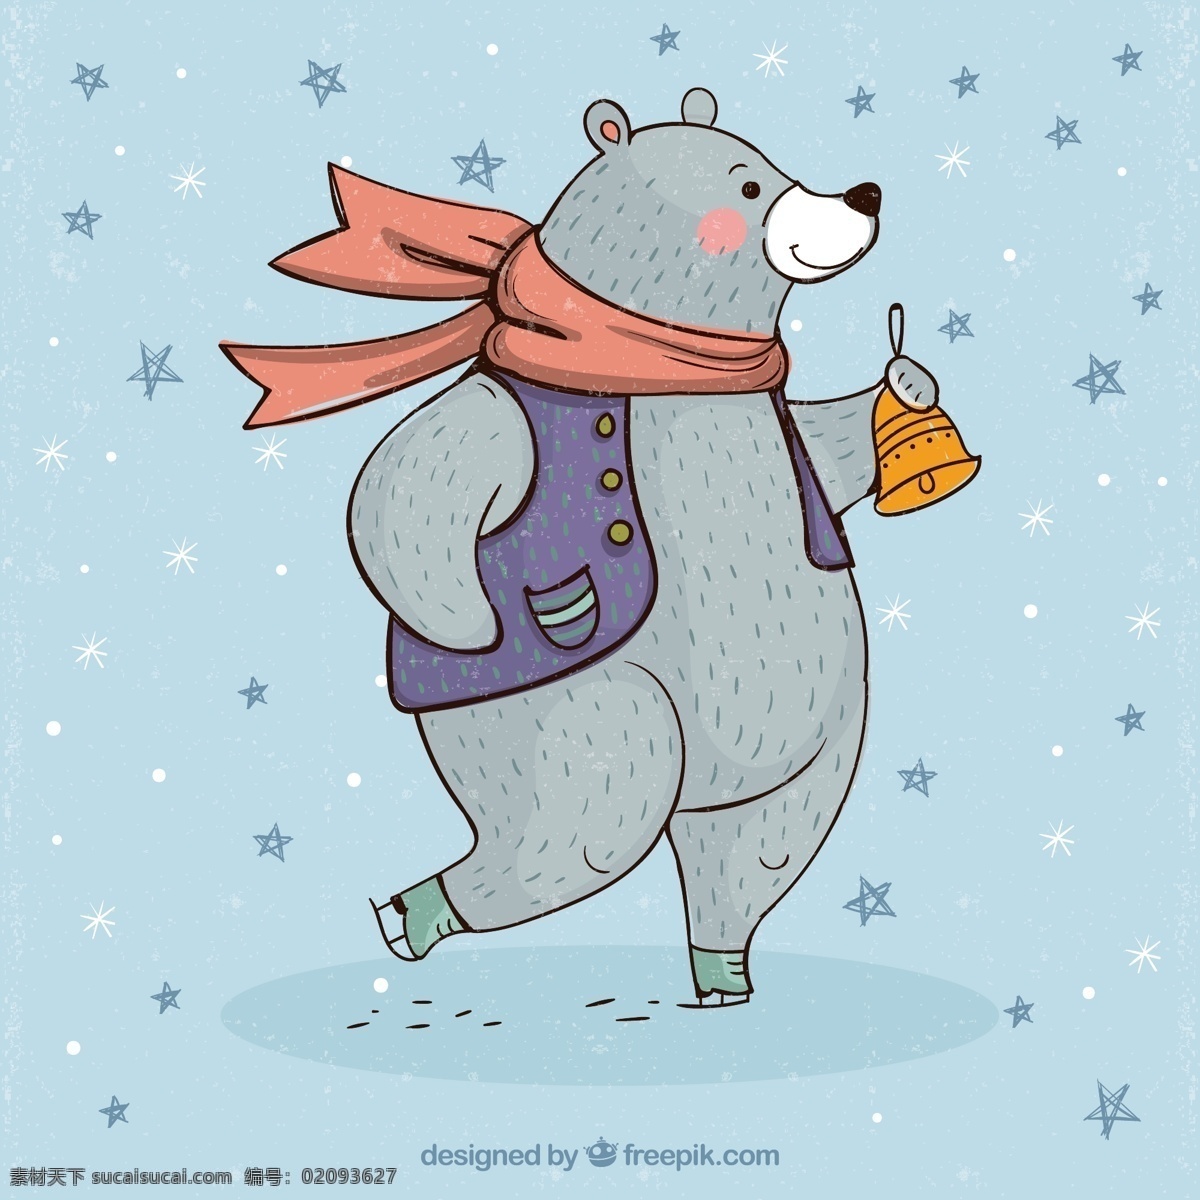 彩绘 溜冰 摇 铃铛 熊 矢量图 雪花 冬季 滑雪 ai格式 矢量素材 狗熊 北极熊 最新矢量图 画册设计